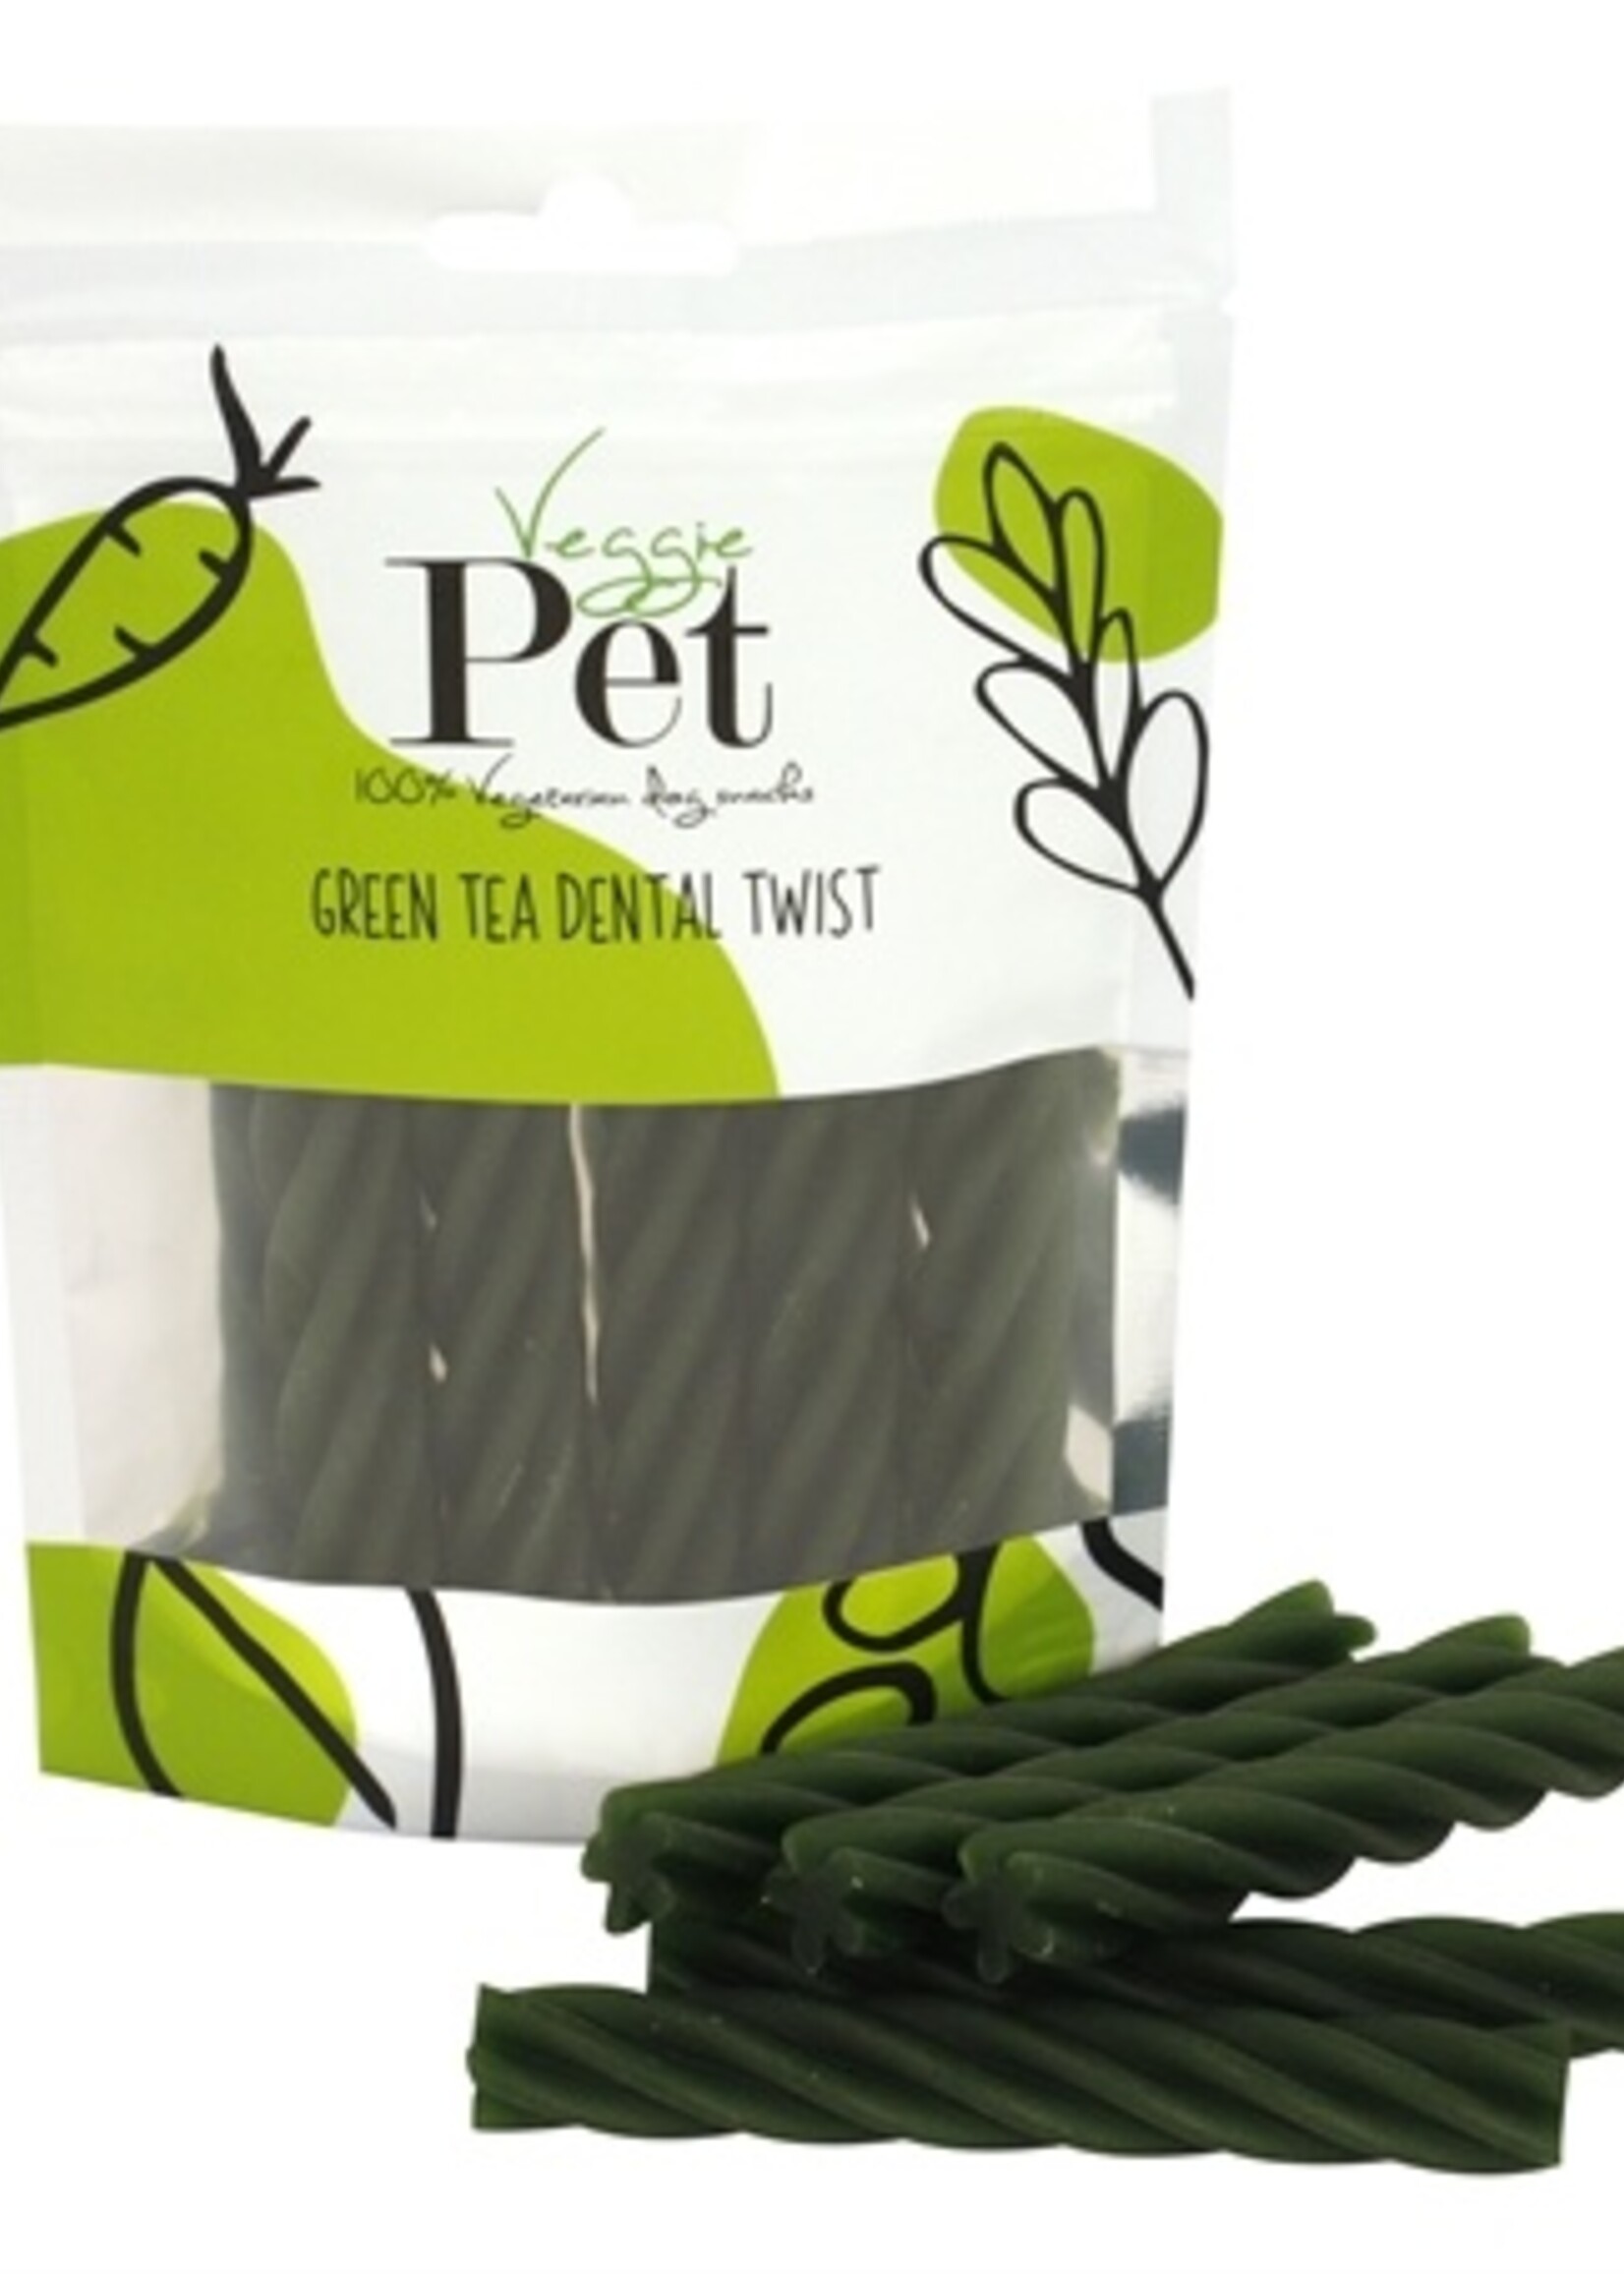 Veggie pet Veggie pet green tea dental twist